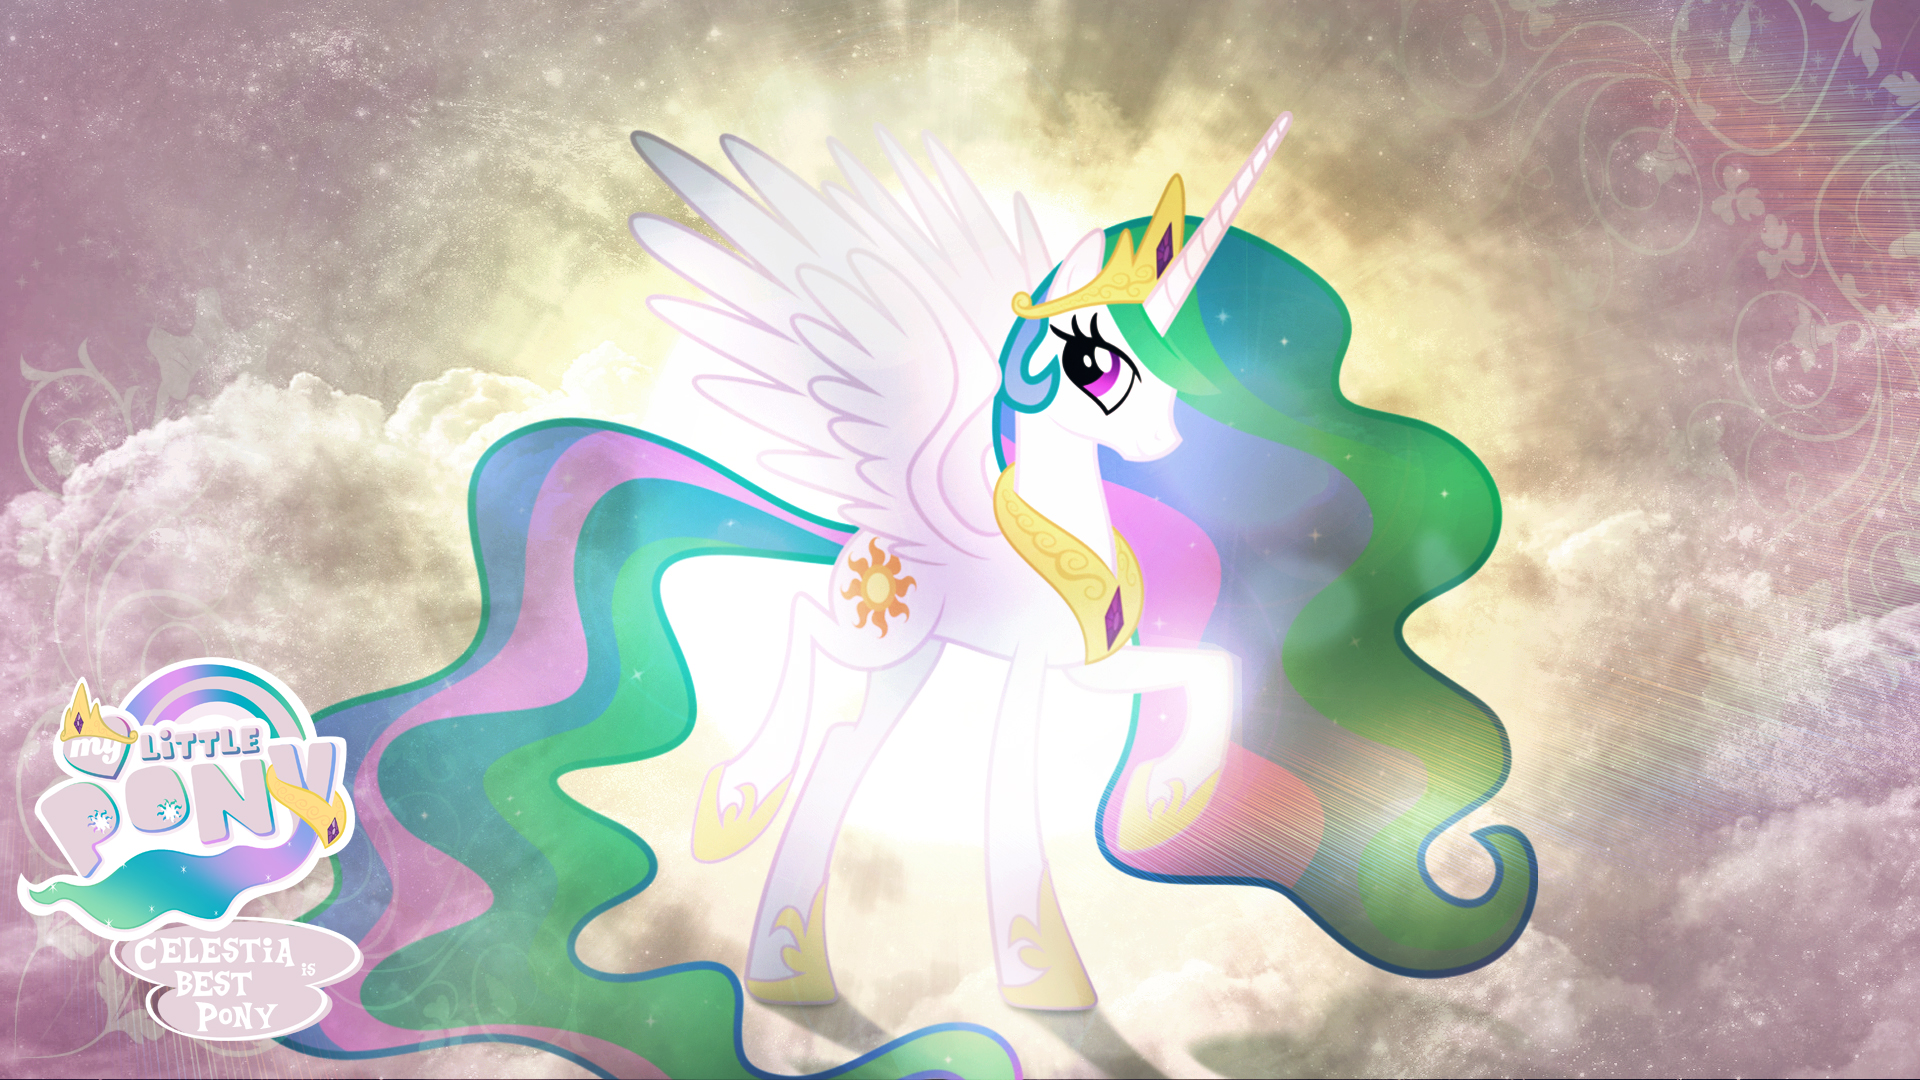 Princess celestia is best pony hd wallpaper by jackardy on